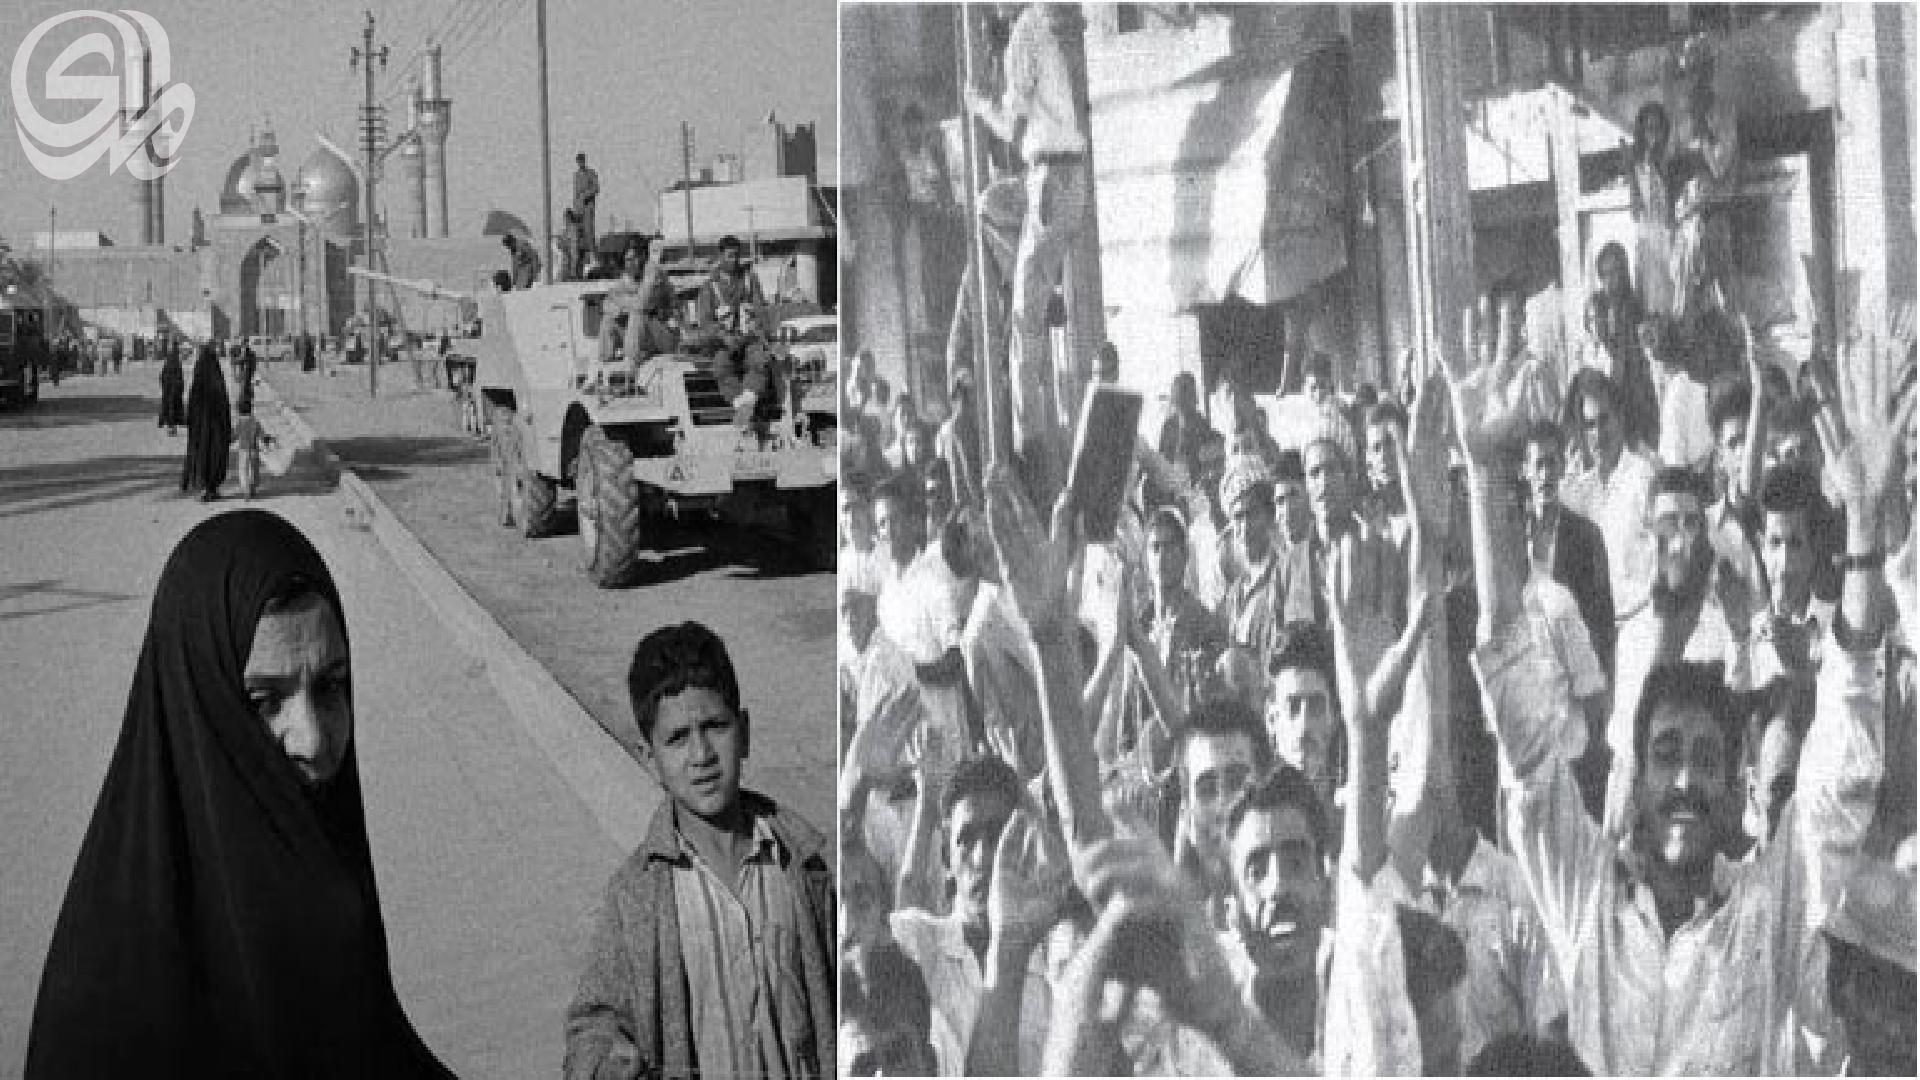 حركة الدفاع عن الشعب العراقي سنة 1963